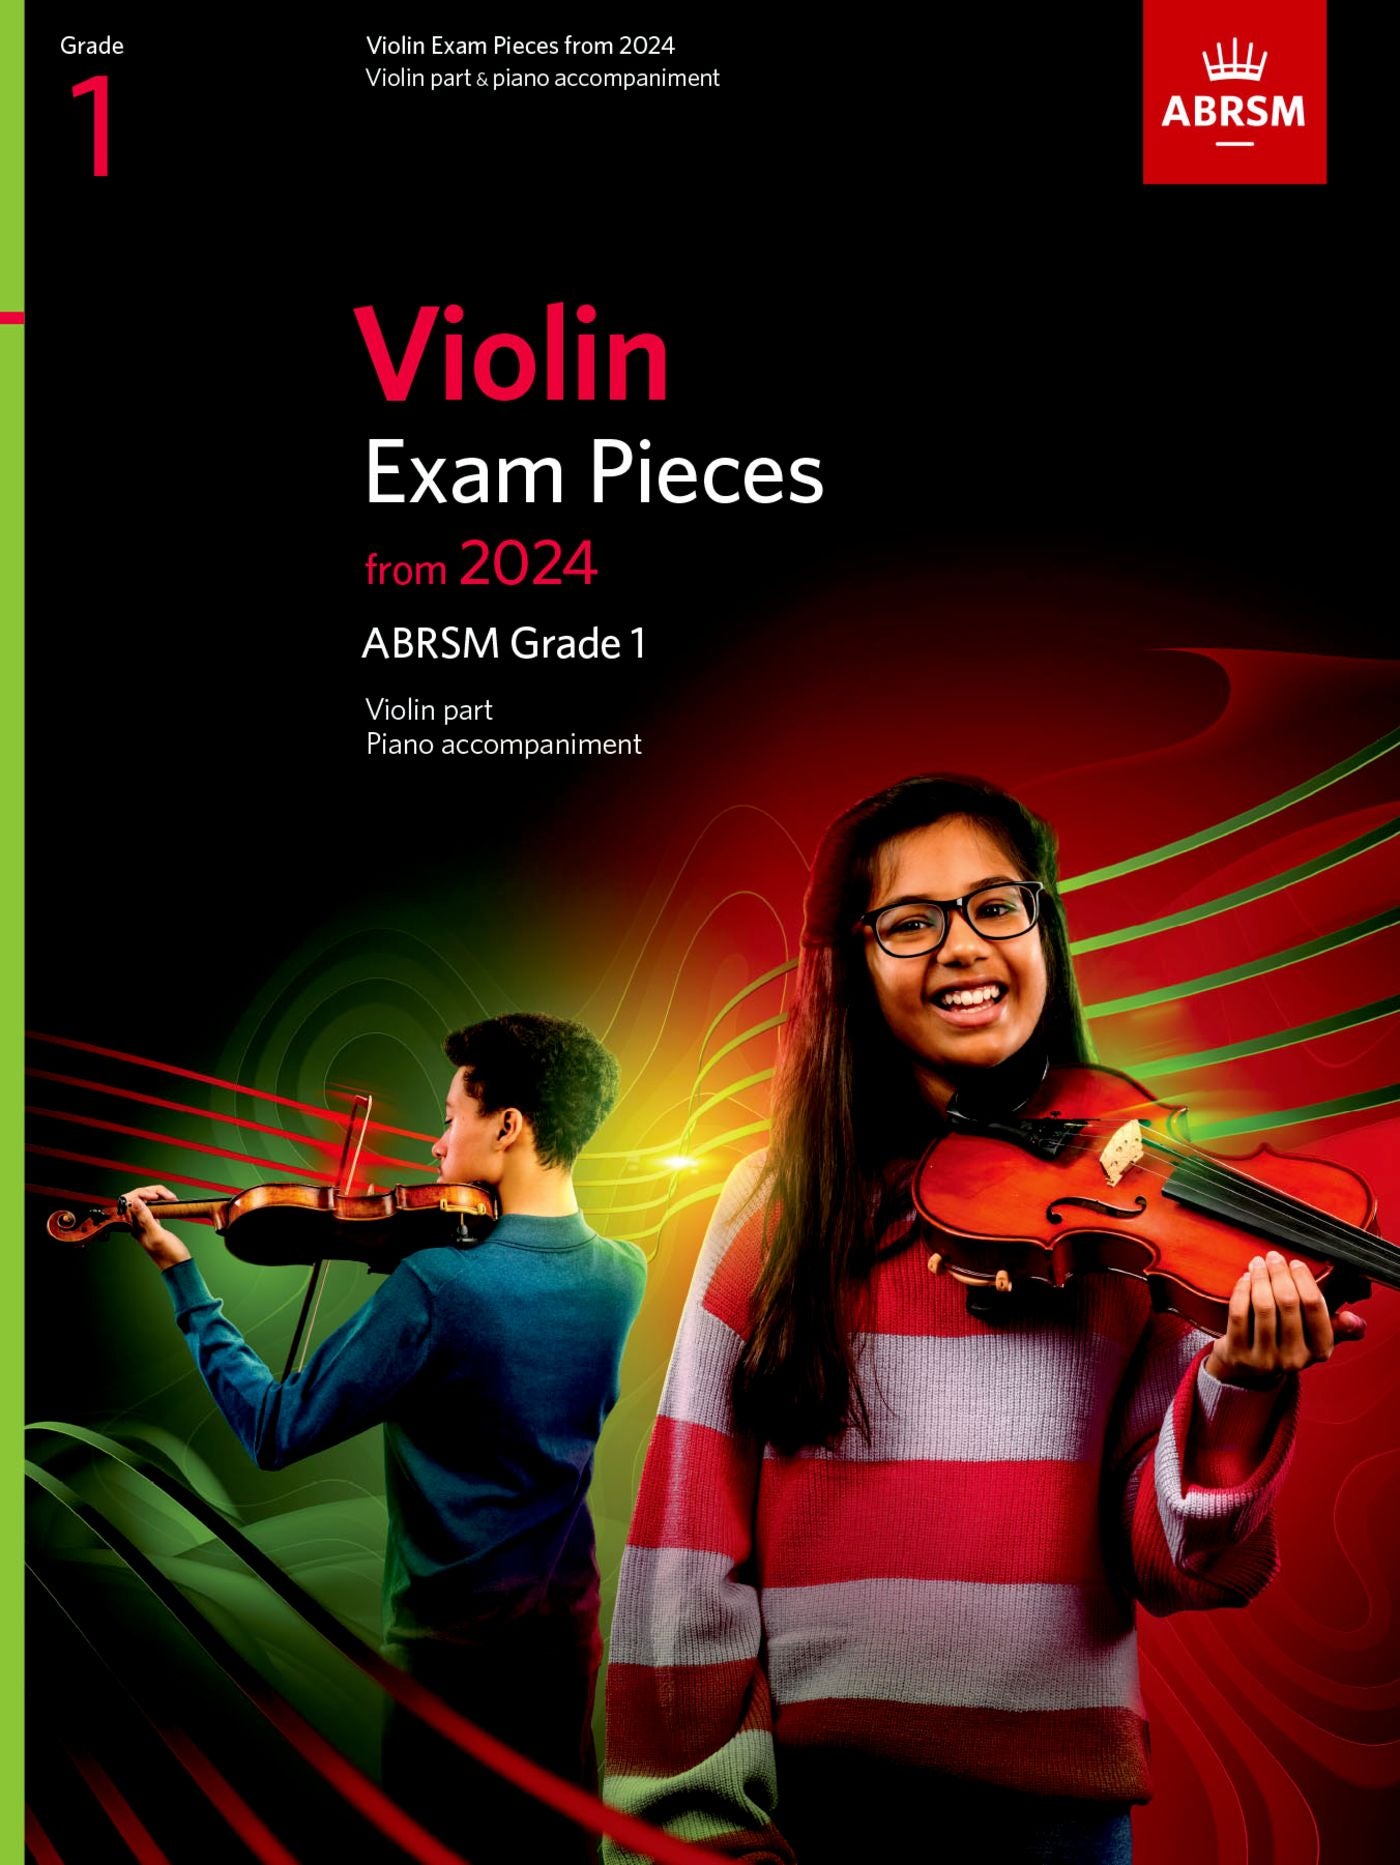 ABRSM Violin Exam Pieces 2024, Grade 1